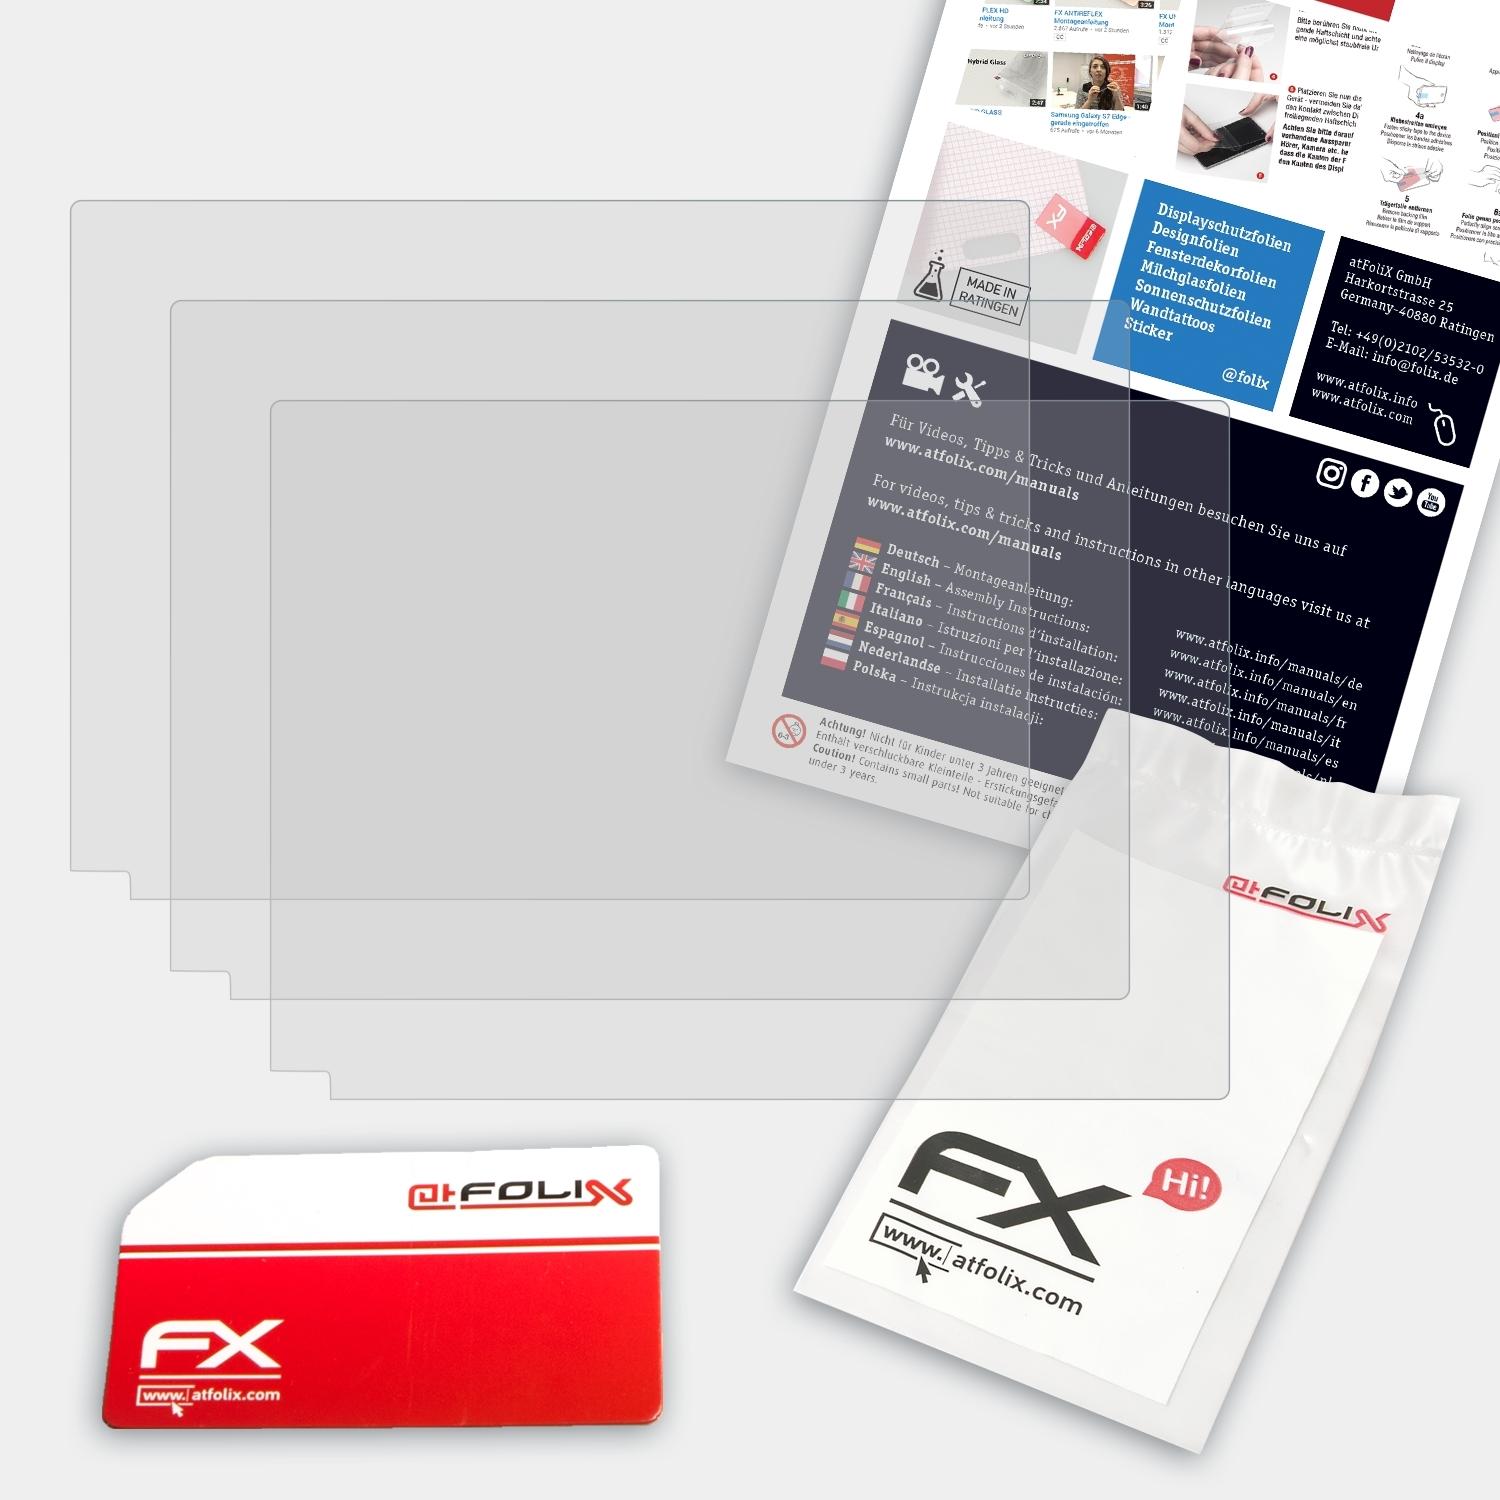 ATFOLIX 3x FX-Antireflex Displayschutz(für Dash Garmin 55) Cam